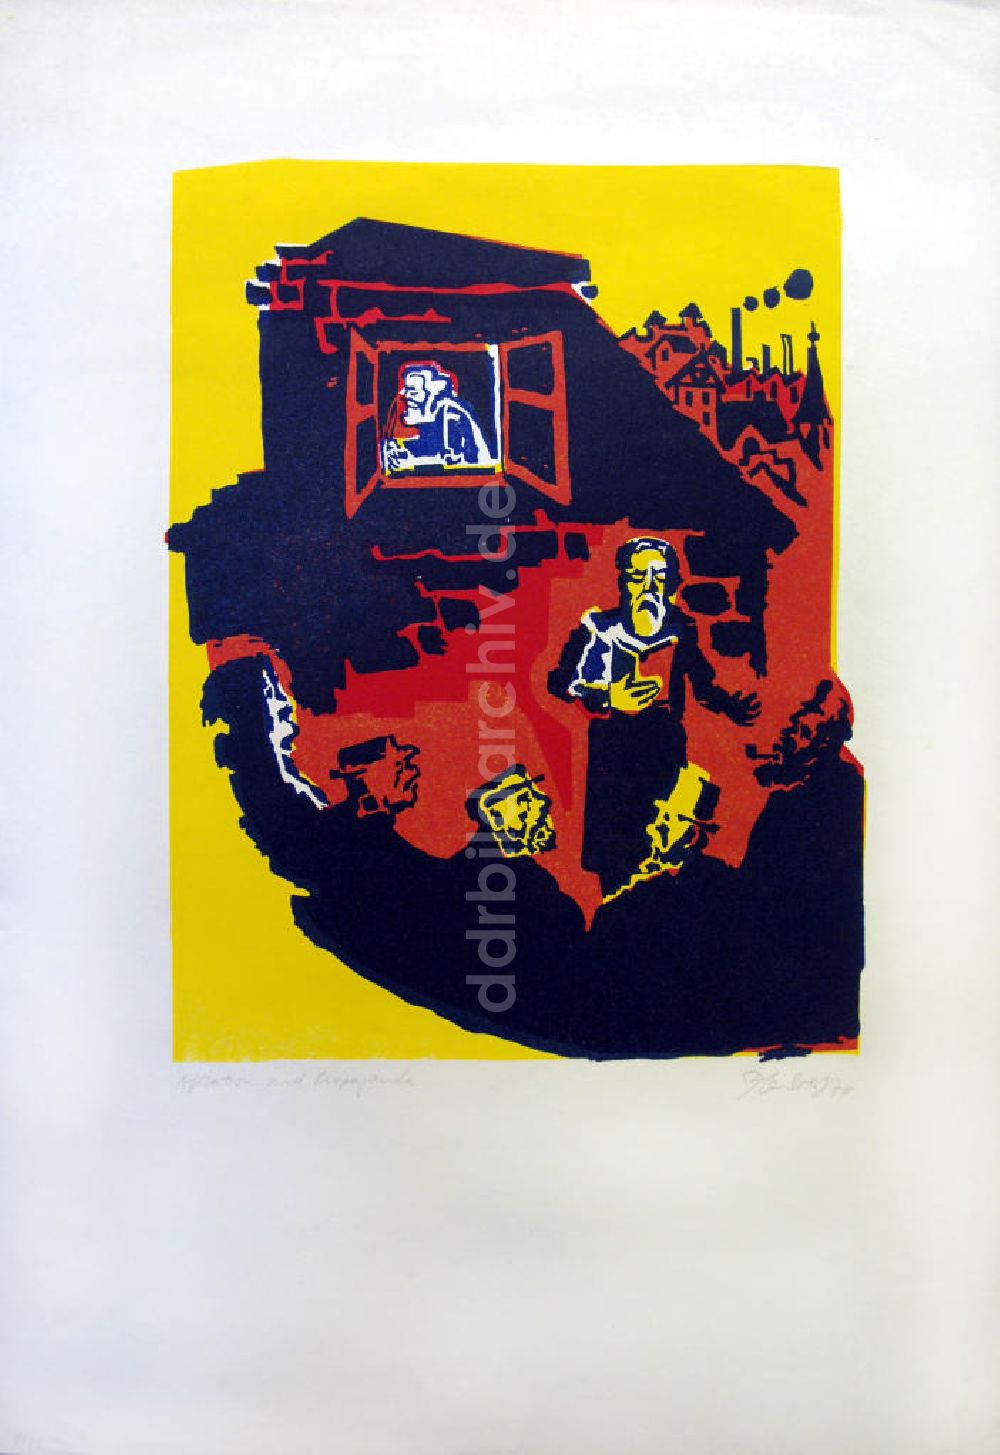 Berlin: Grafik von Herbert Sandberg Agitation und Propaganda aus dem Jahr 1974